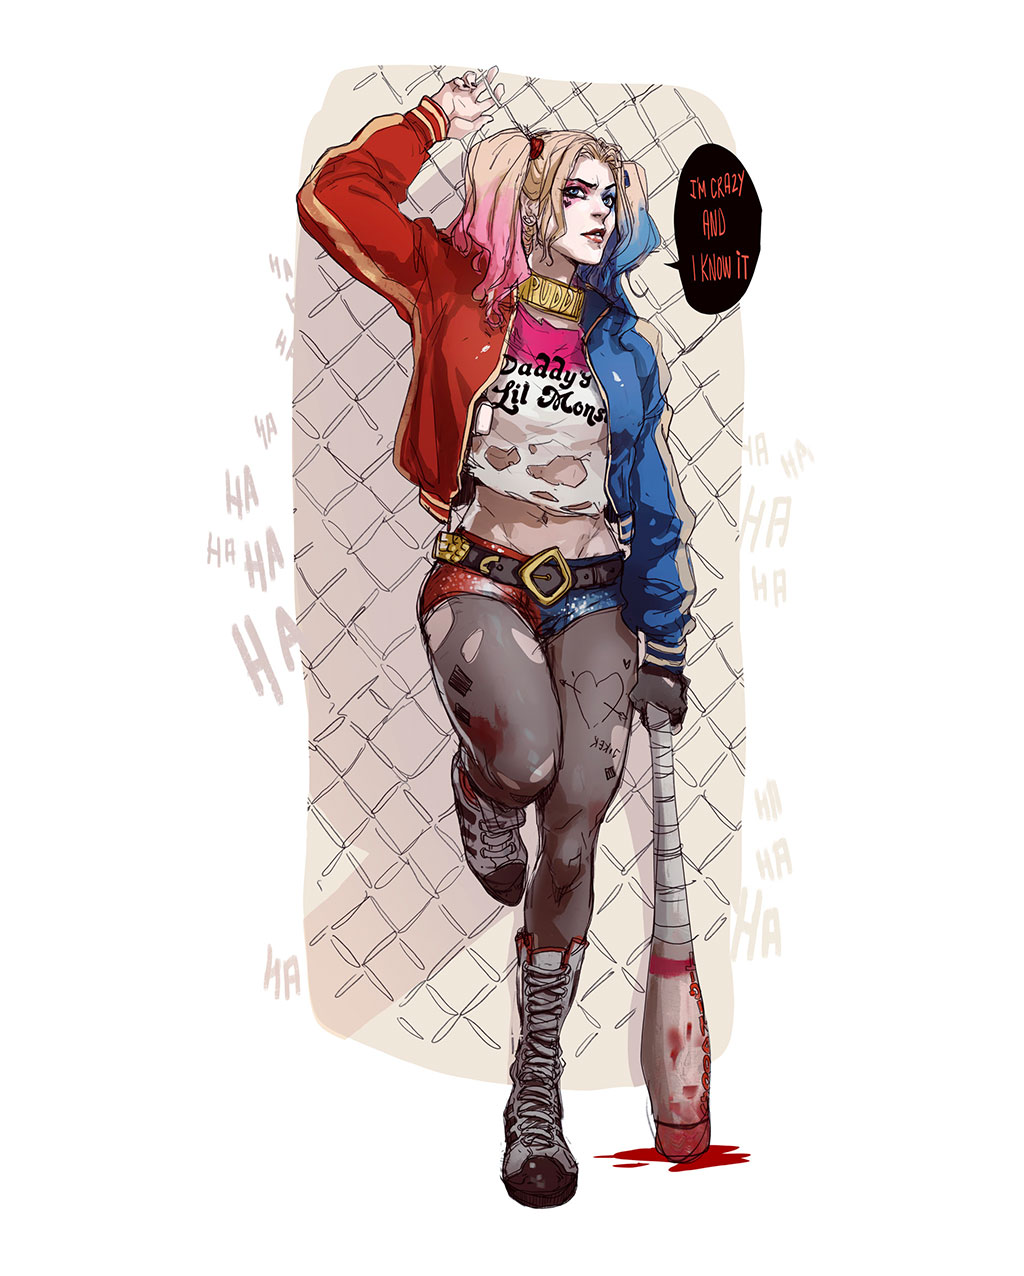 Harley Quinn Fanart by Hicham Habchi